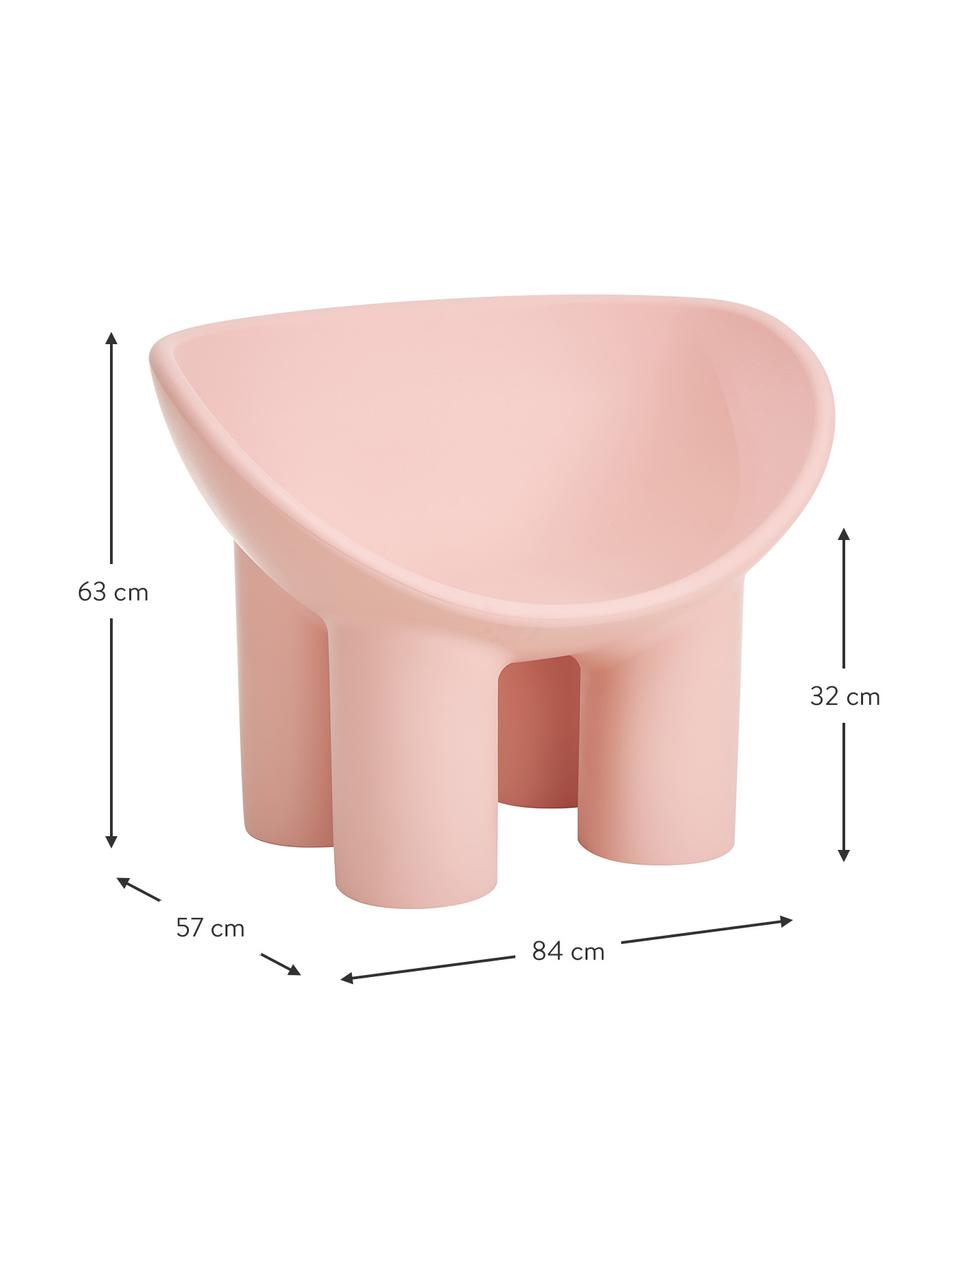 Fauteuil design rose Roly Poly, Polyéthylène, fabriqué dans un processus de moulage par rotation, Rose, blanc crème, larg. 84 x prof. 57 cm